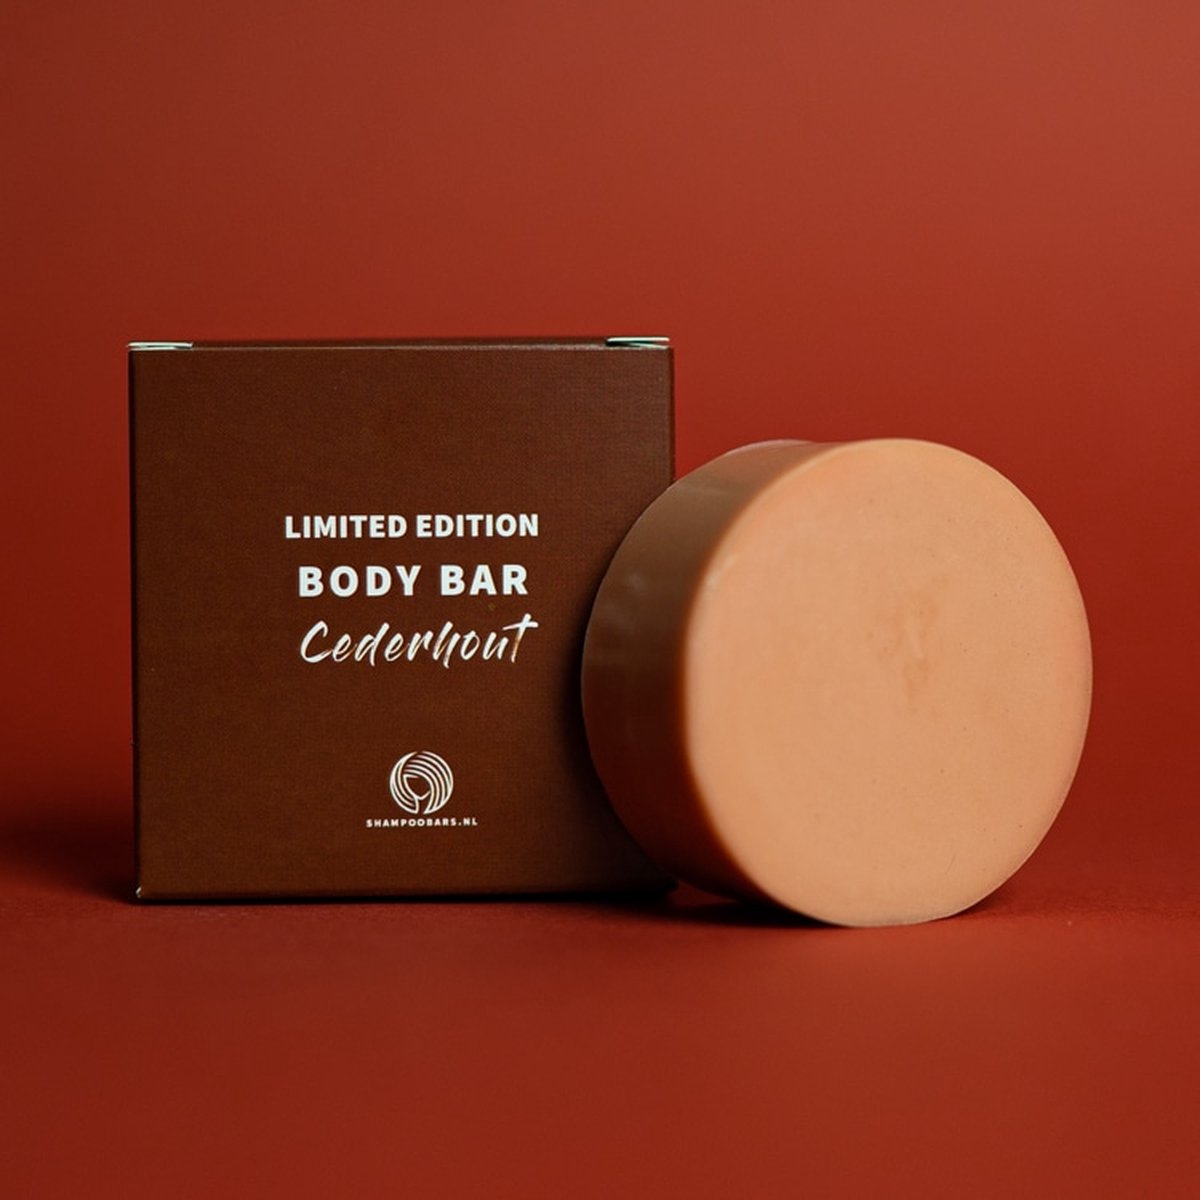 Body Bar Cederhout Limited edition